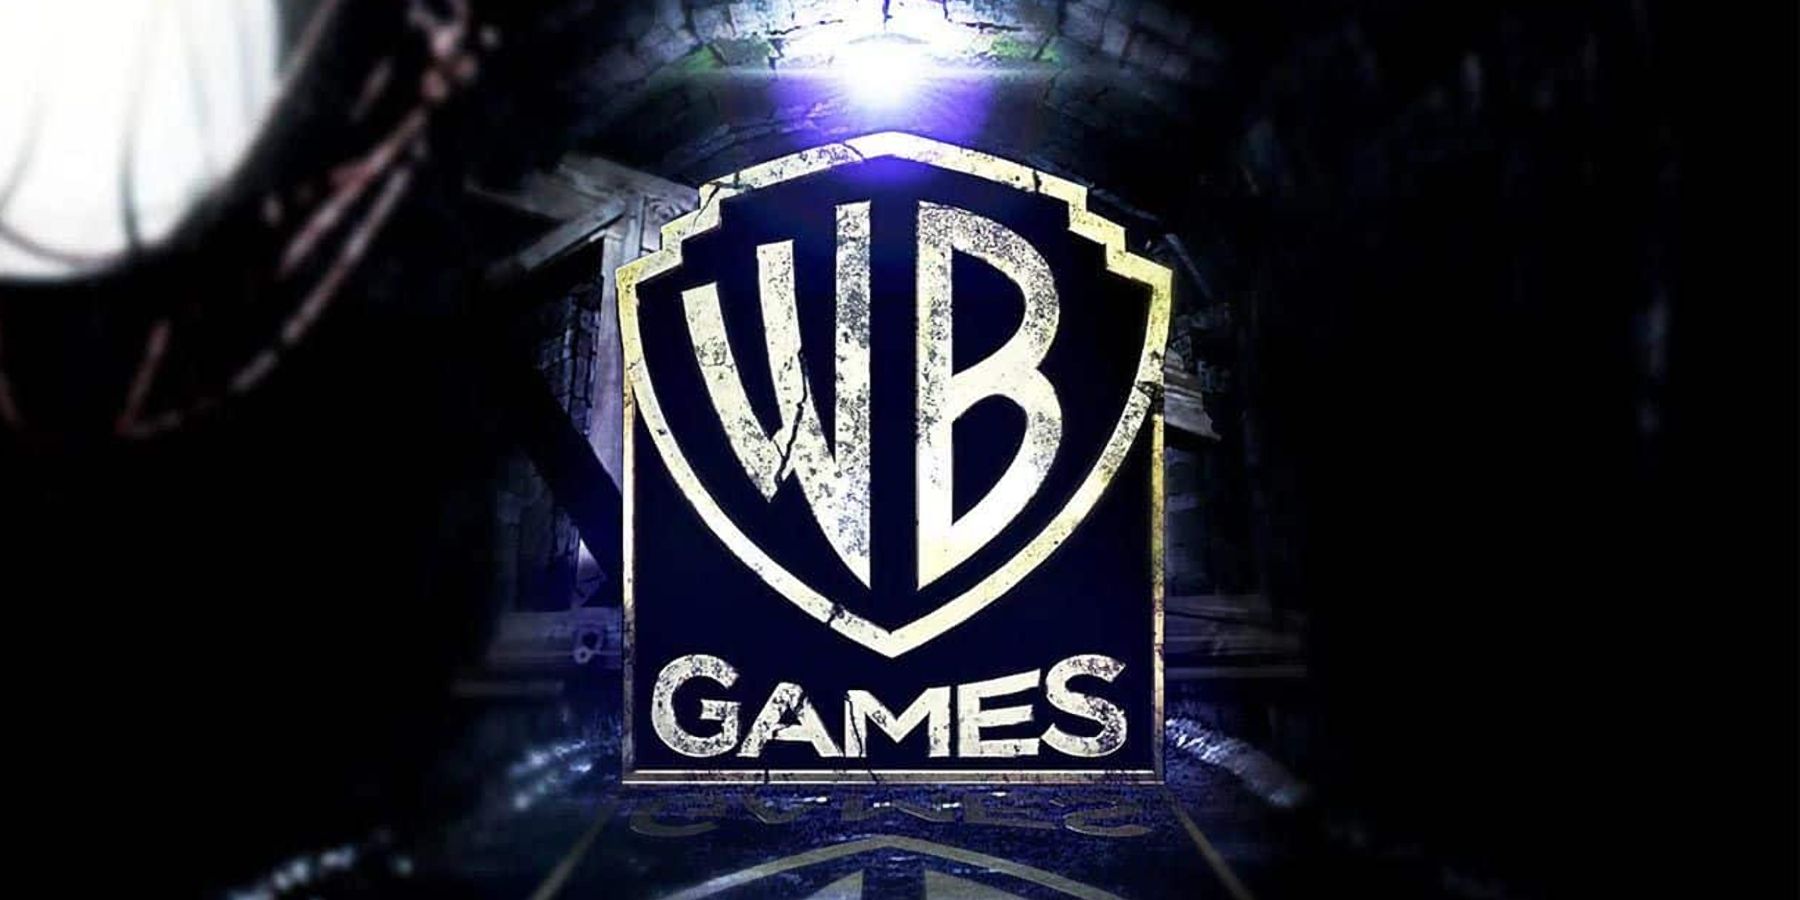 wb games logo